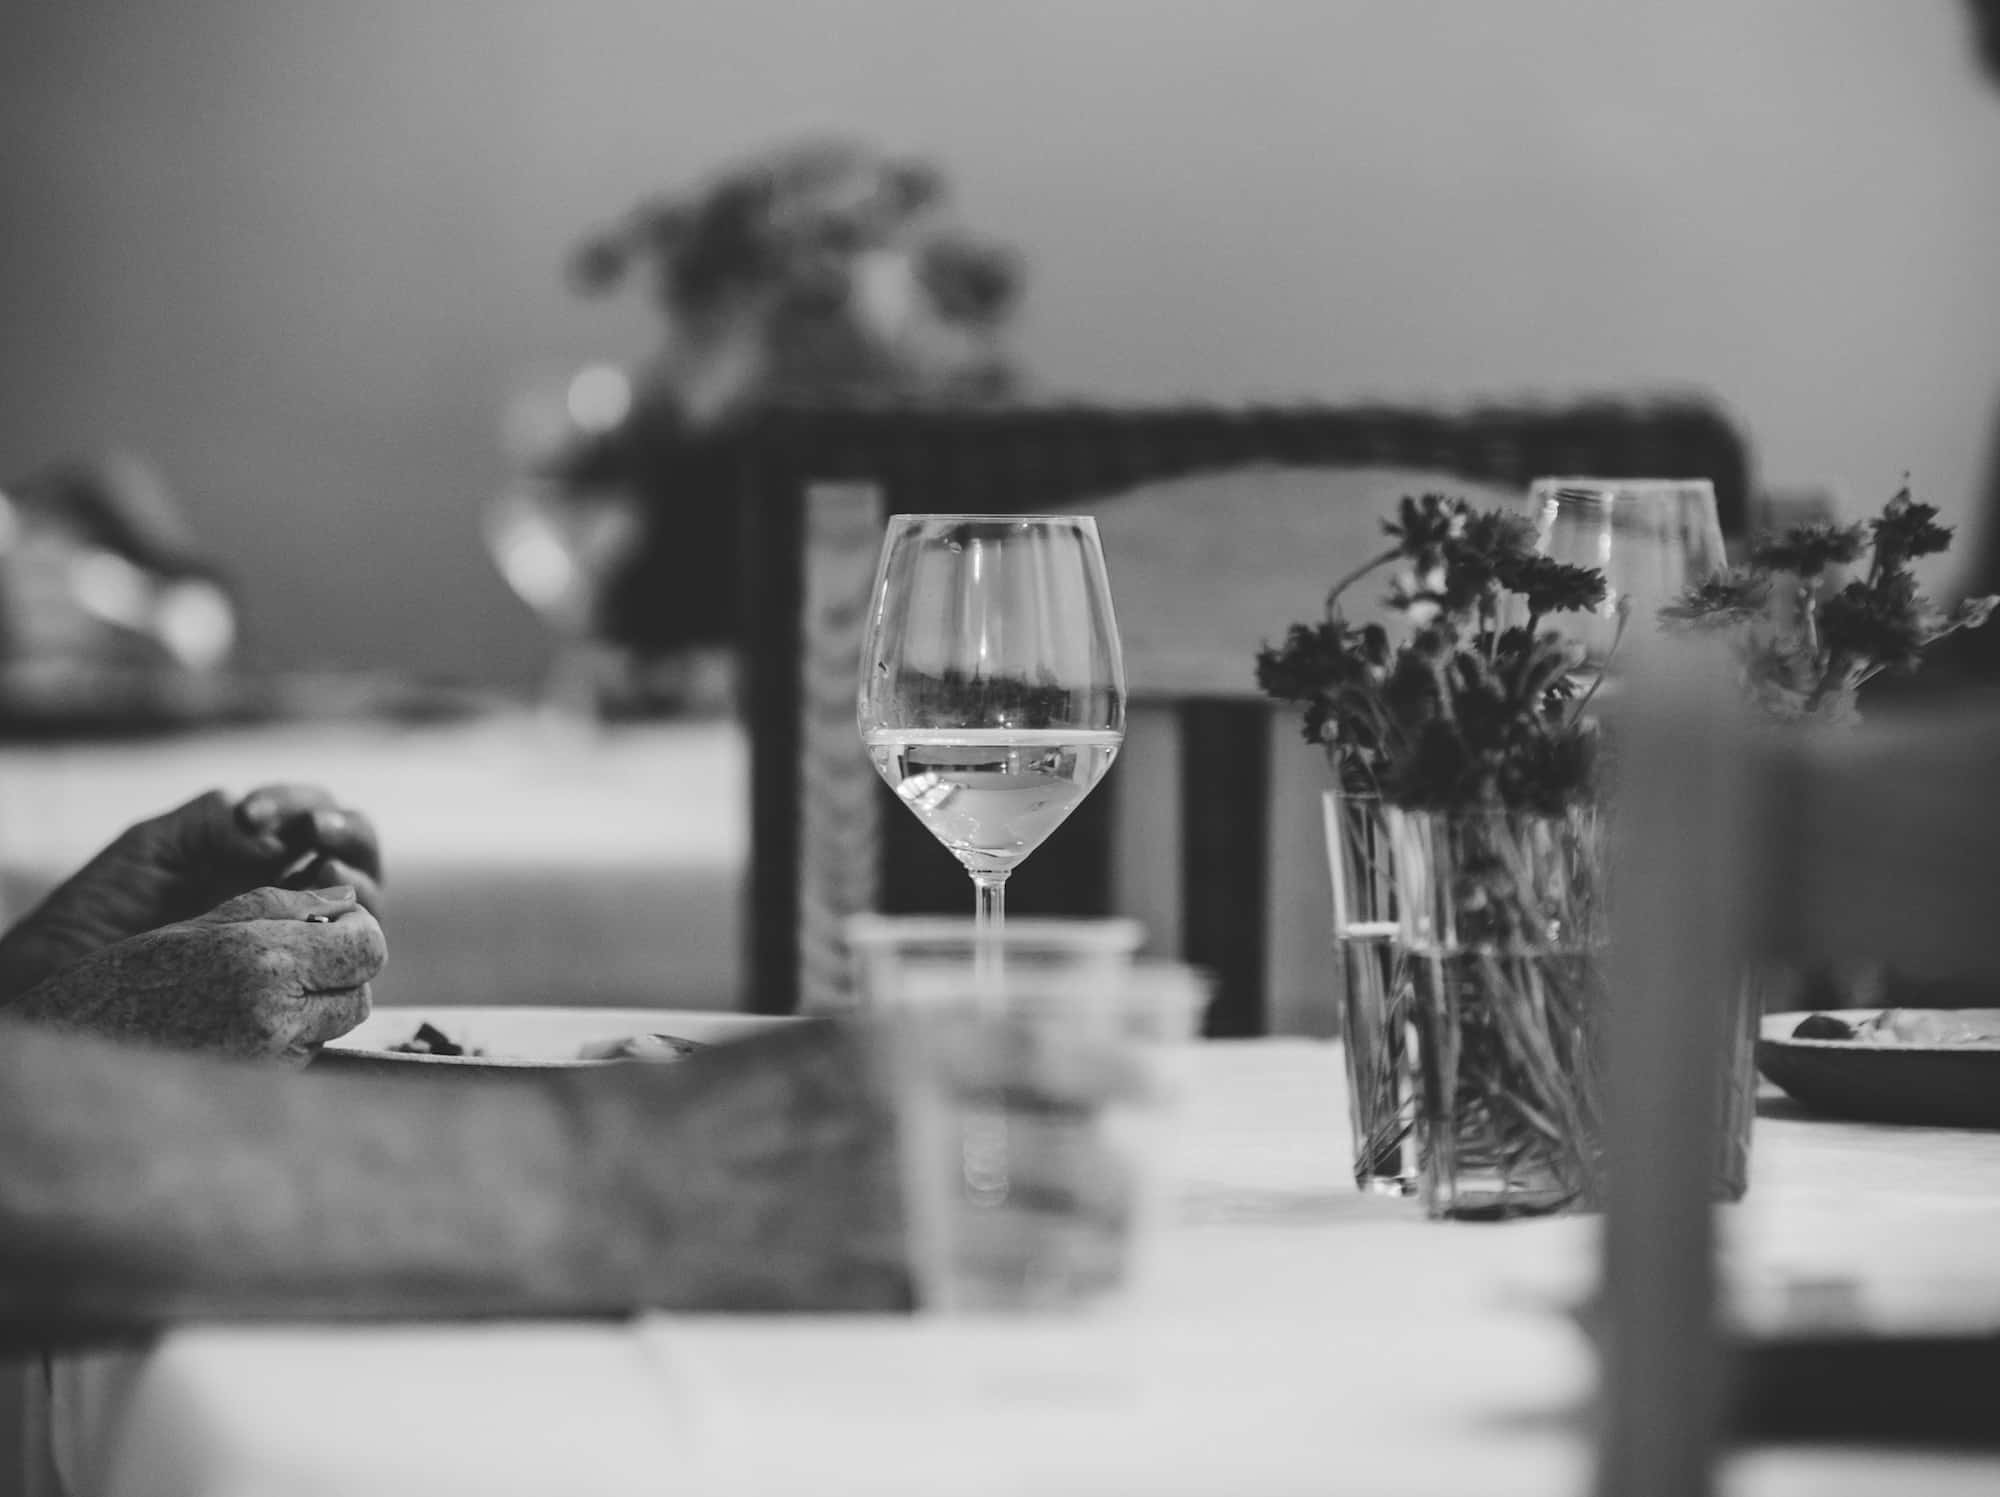 Ein Tisch mit einem Glas Sommerwein und Blumen in einer Vase